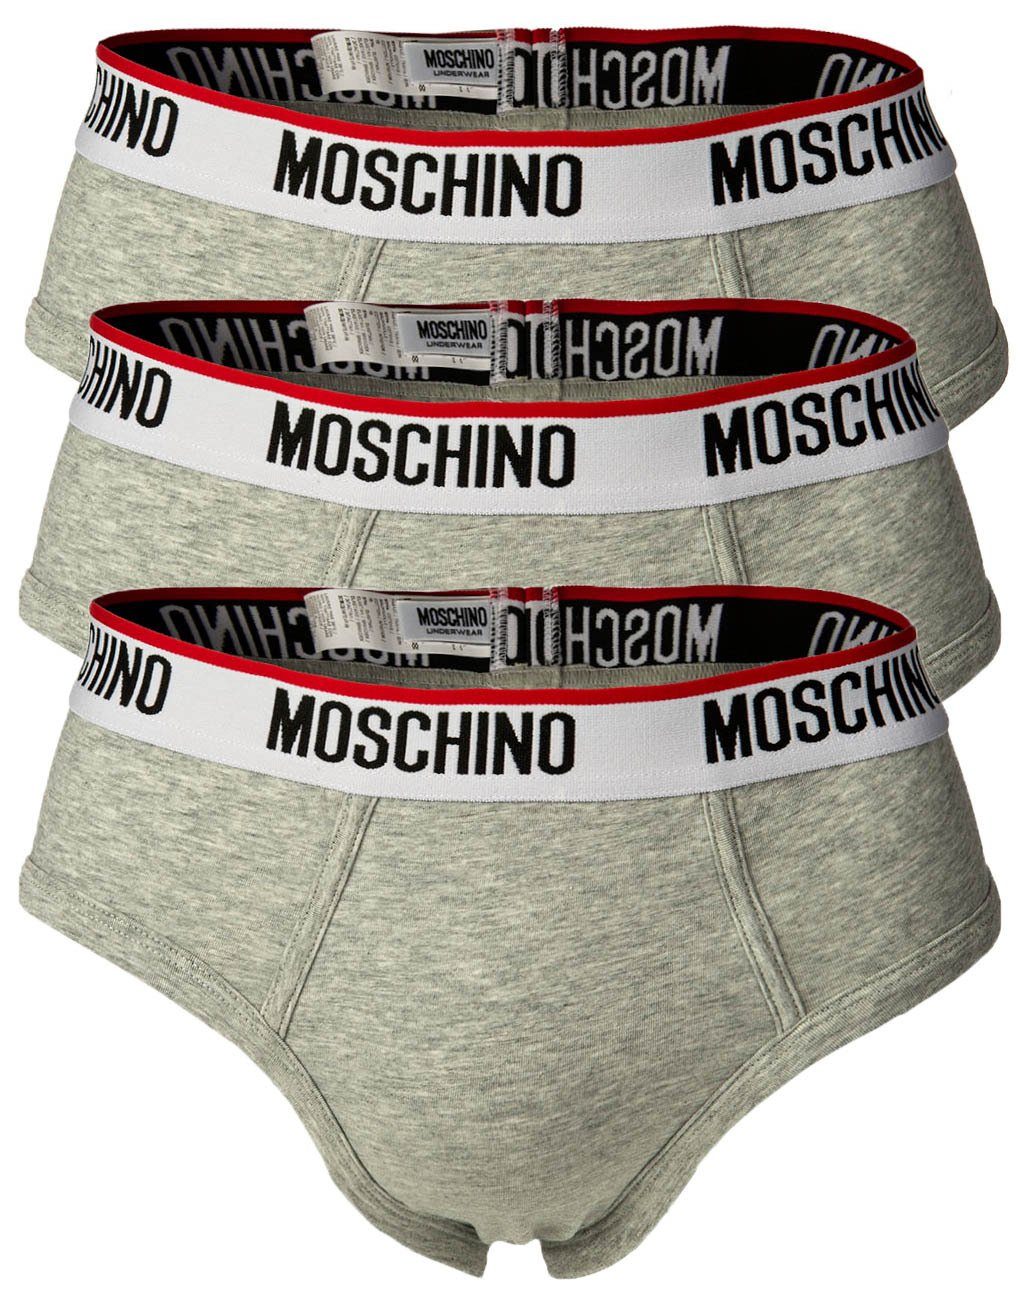 Moschino Slip Herren Slips 3er Pack - Briefs, Unterhose, Cotton Grau